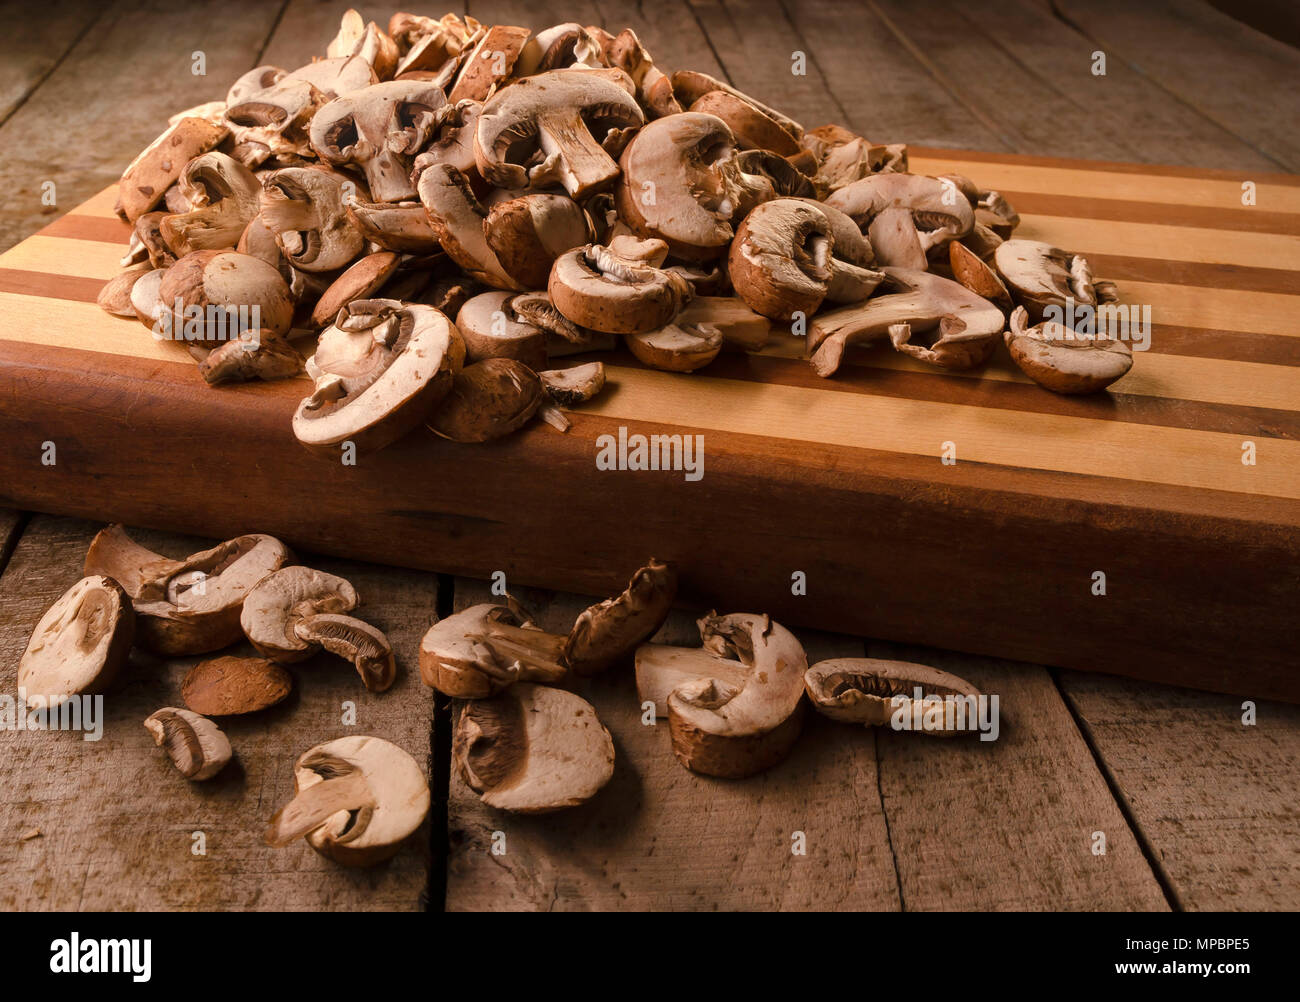 Les champignons crus en tranches fraîchement conserver sur une planche à découper en bois assis sur une surface en bois grange Banque D'Images